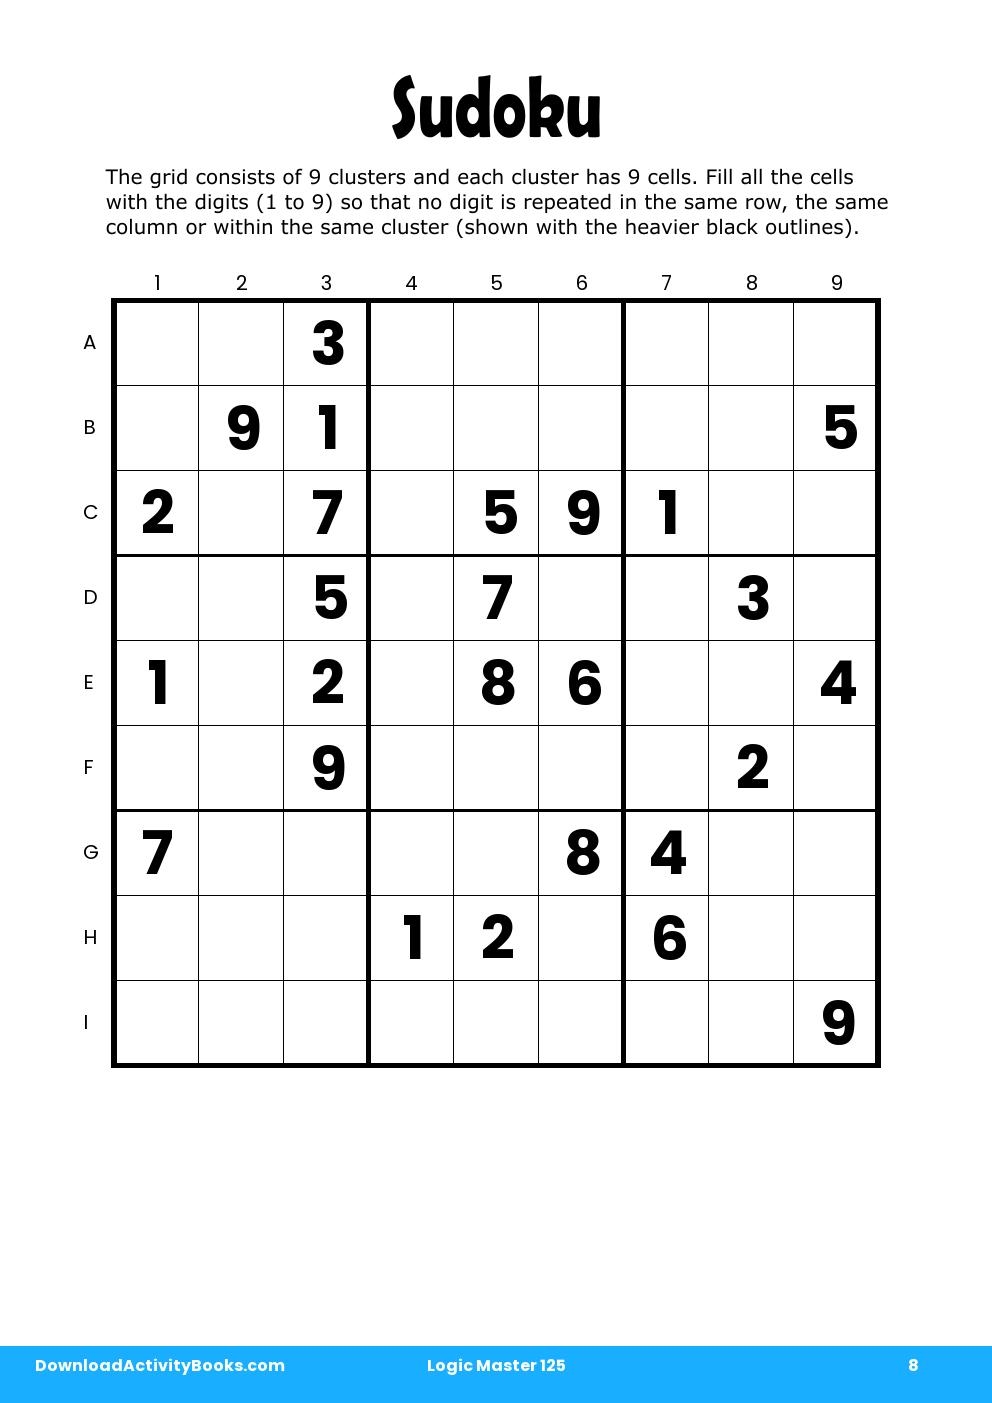 Sudoku in Logic Master 125